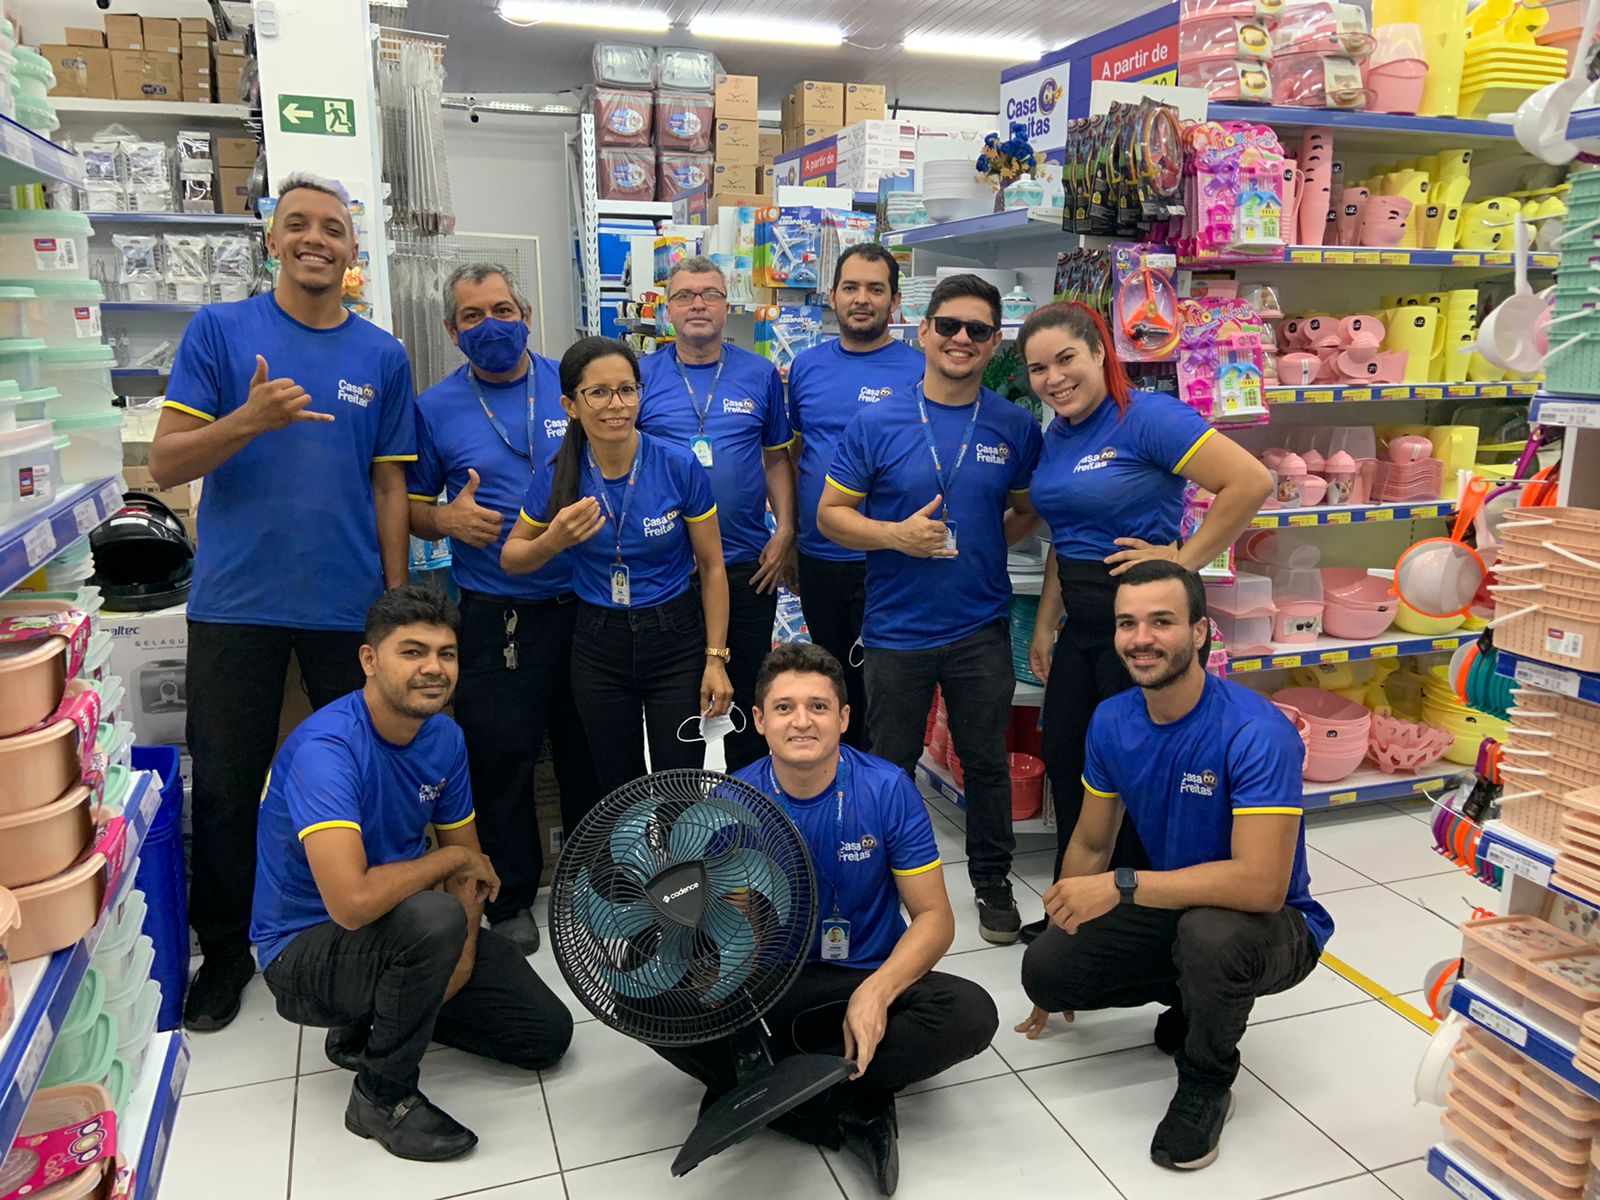 Propaganda em loja do Piauí viraliza: "Não imaginava tanto", diz gerente (Foto: Divulgação)